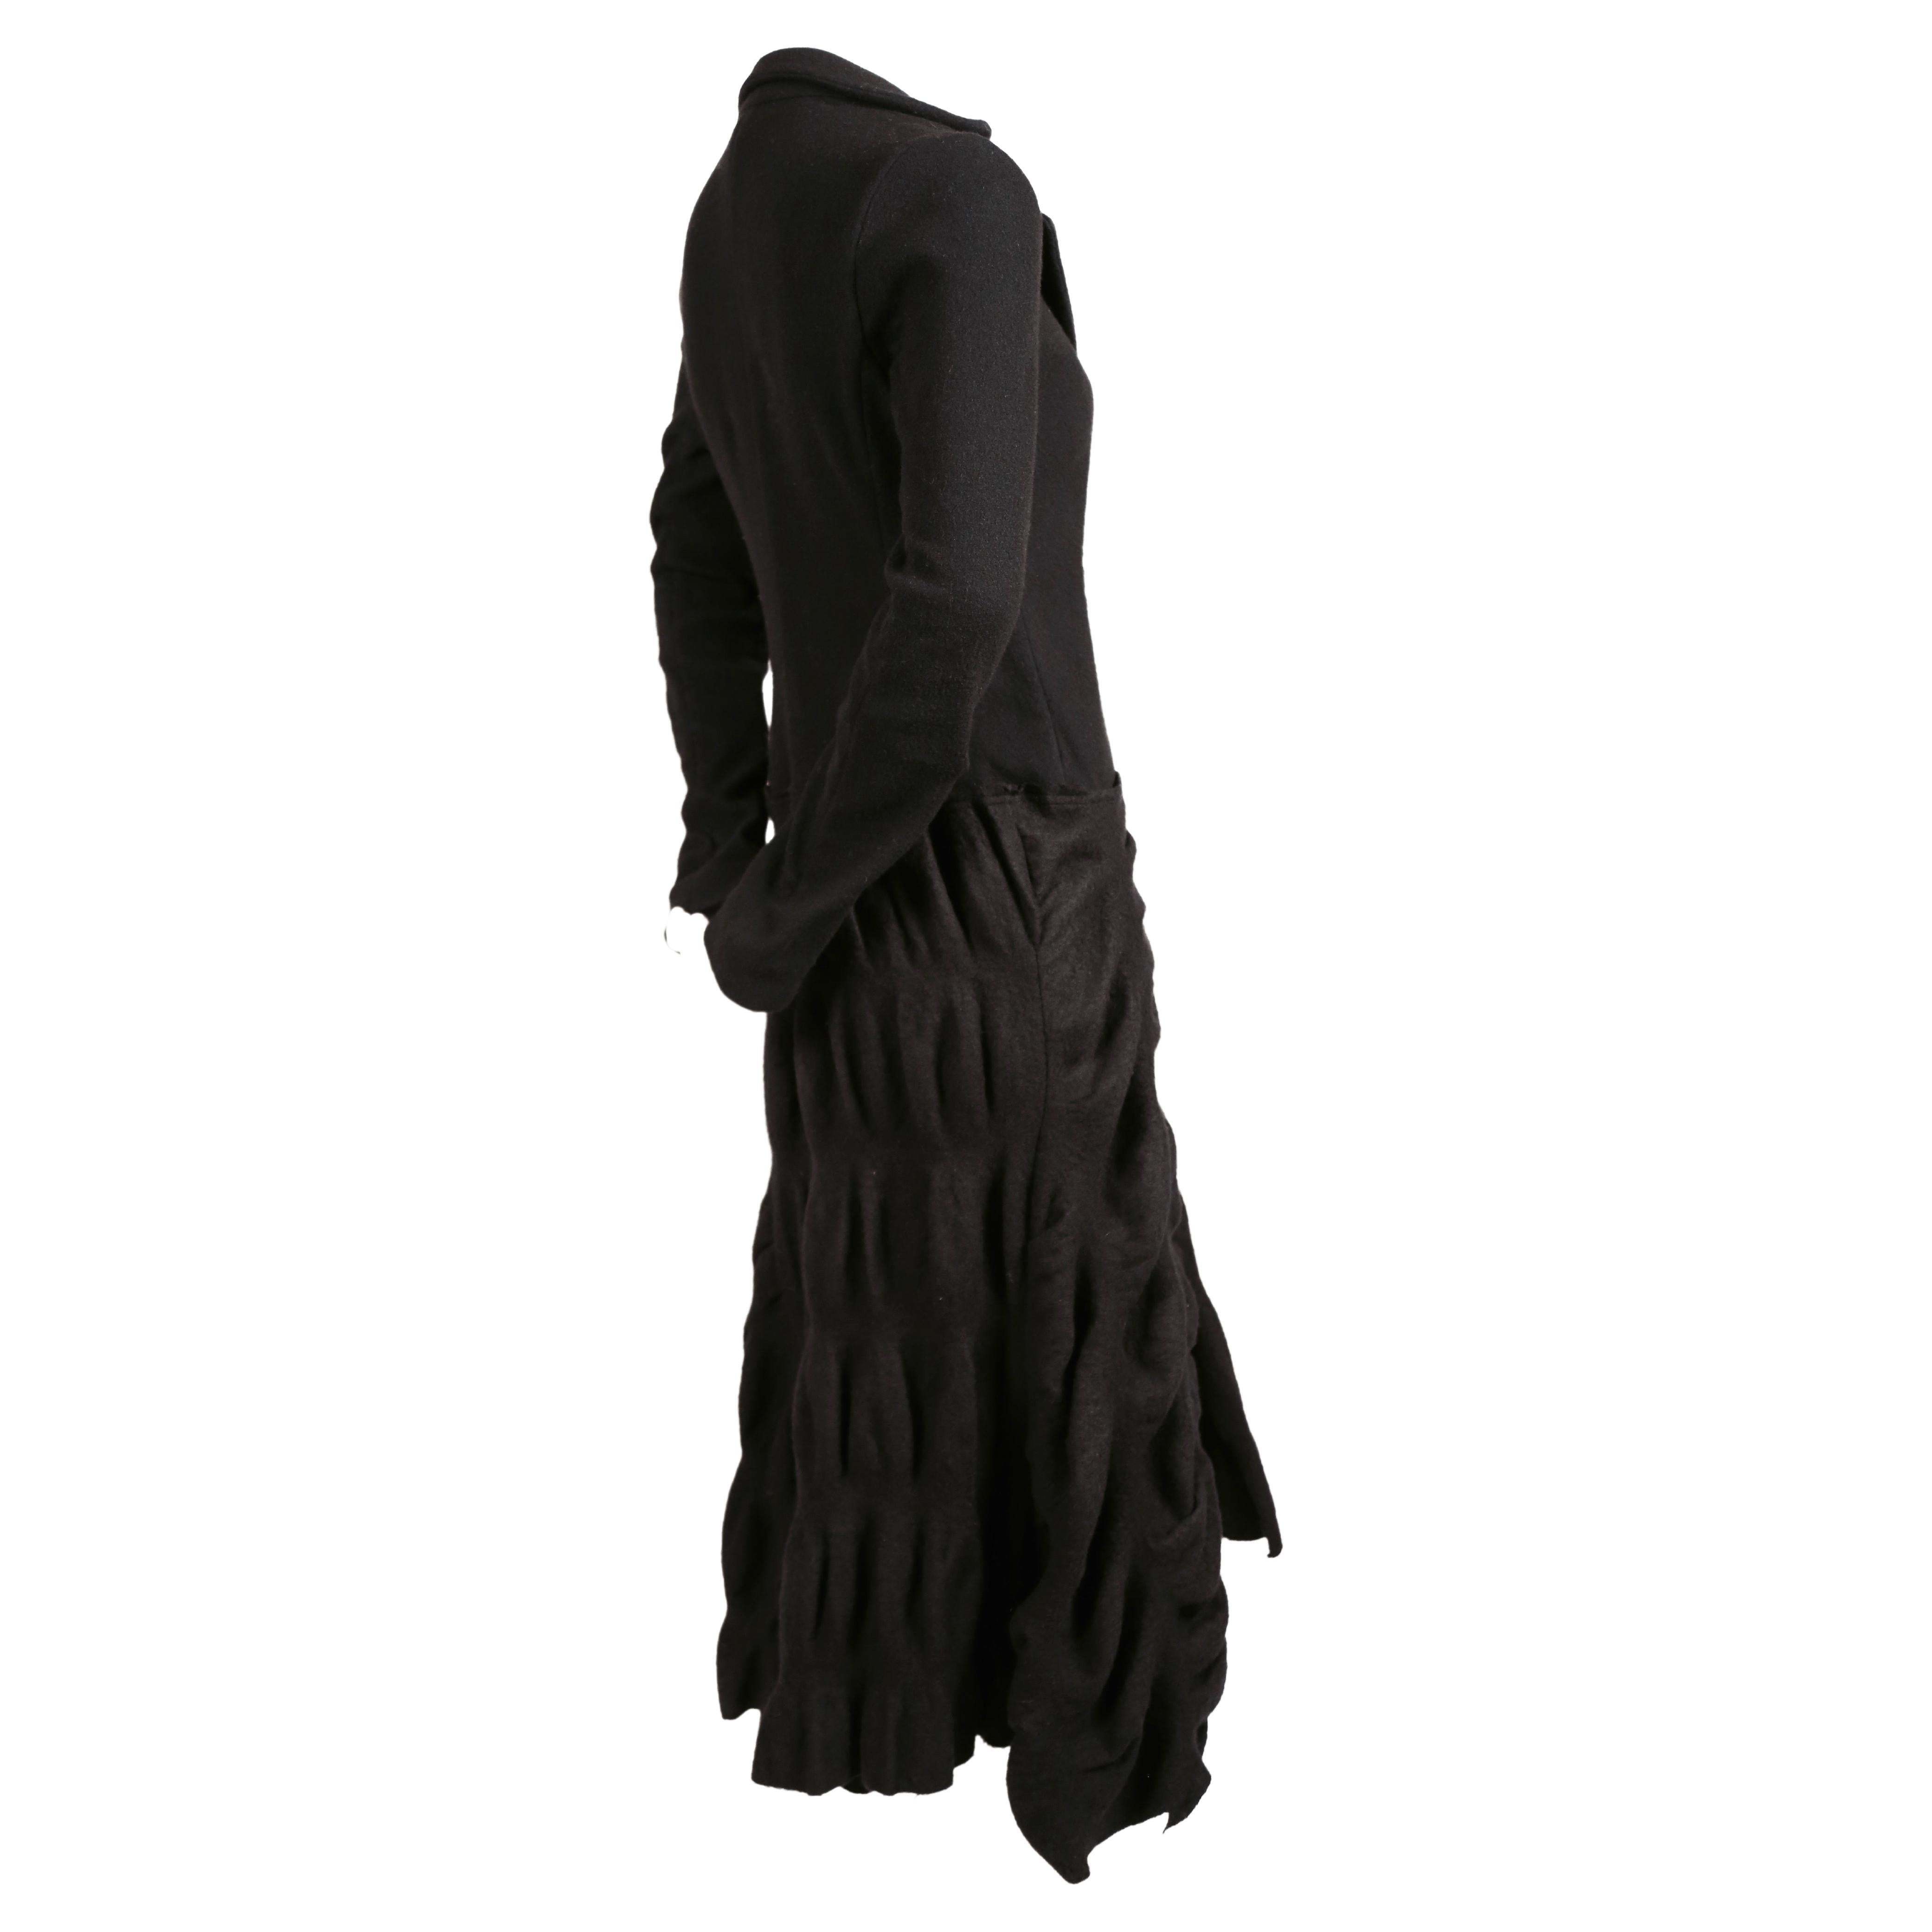 Long manteau noir en tissu de laine plissé, conçu par Roberto Cavalli pour Just Cavalli. Taille italienne 40. Mesures approximatives : épaule 15